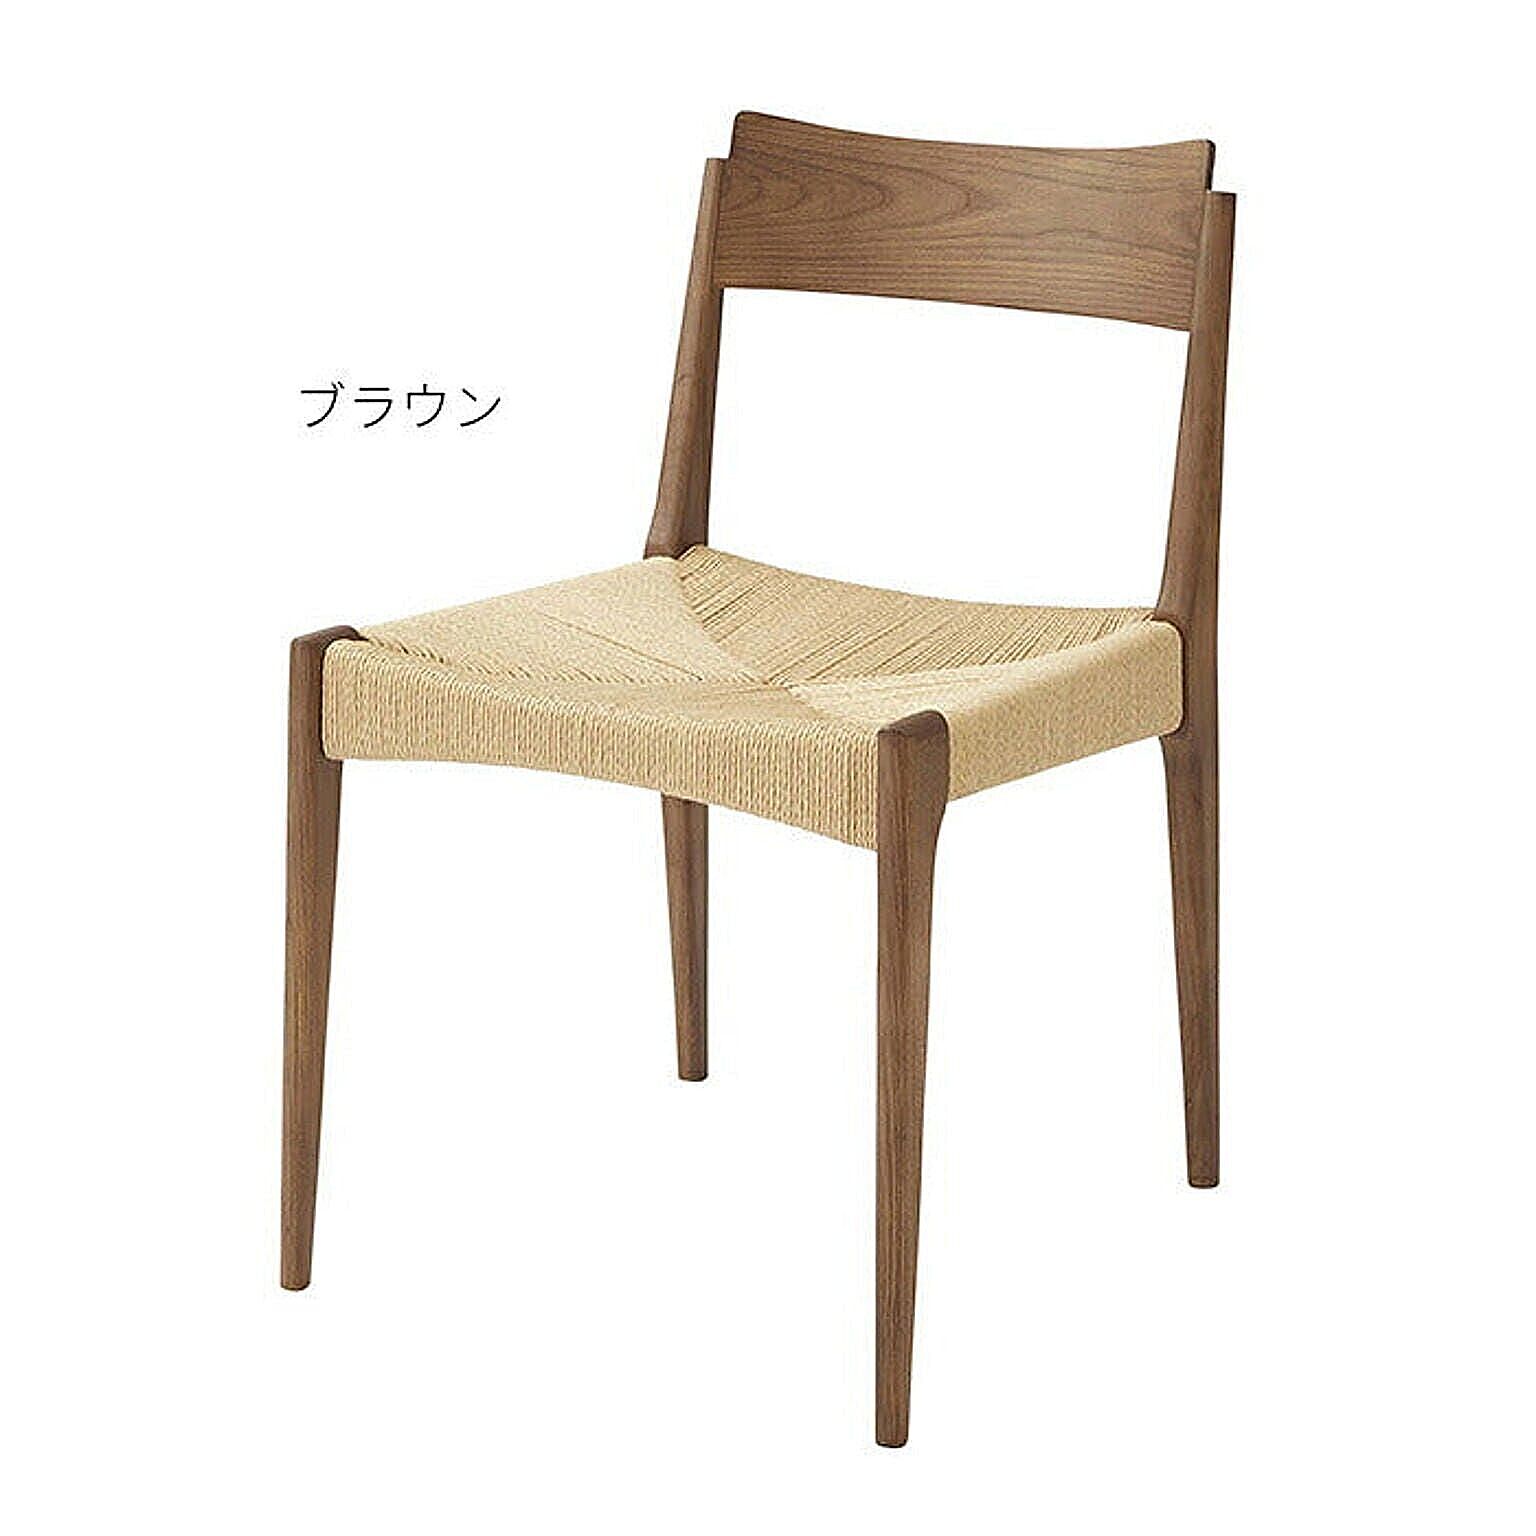 椅子 同色2脚入 完成品 ペーパーコード チェア ACE-73 幅46x奥行56x高さ76cm 東谷